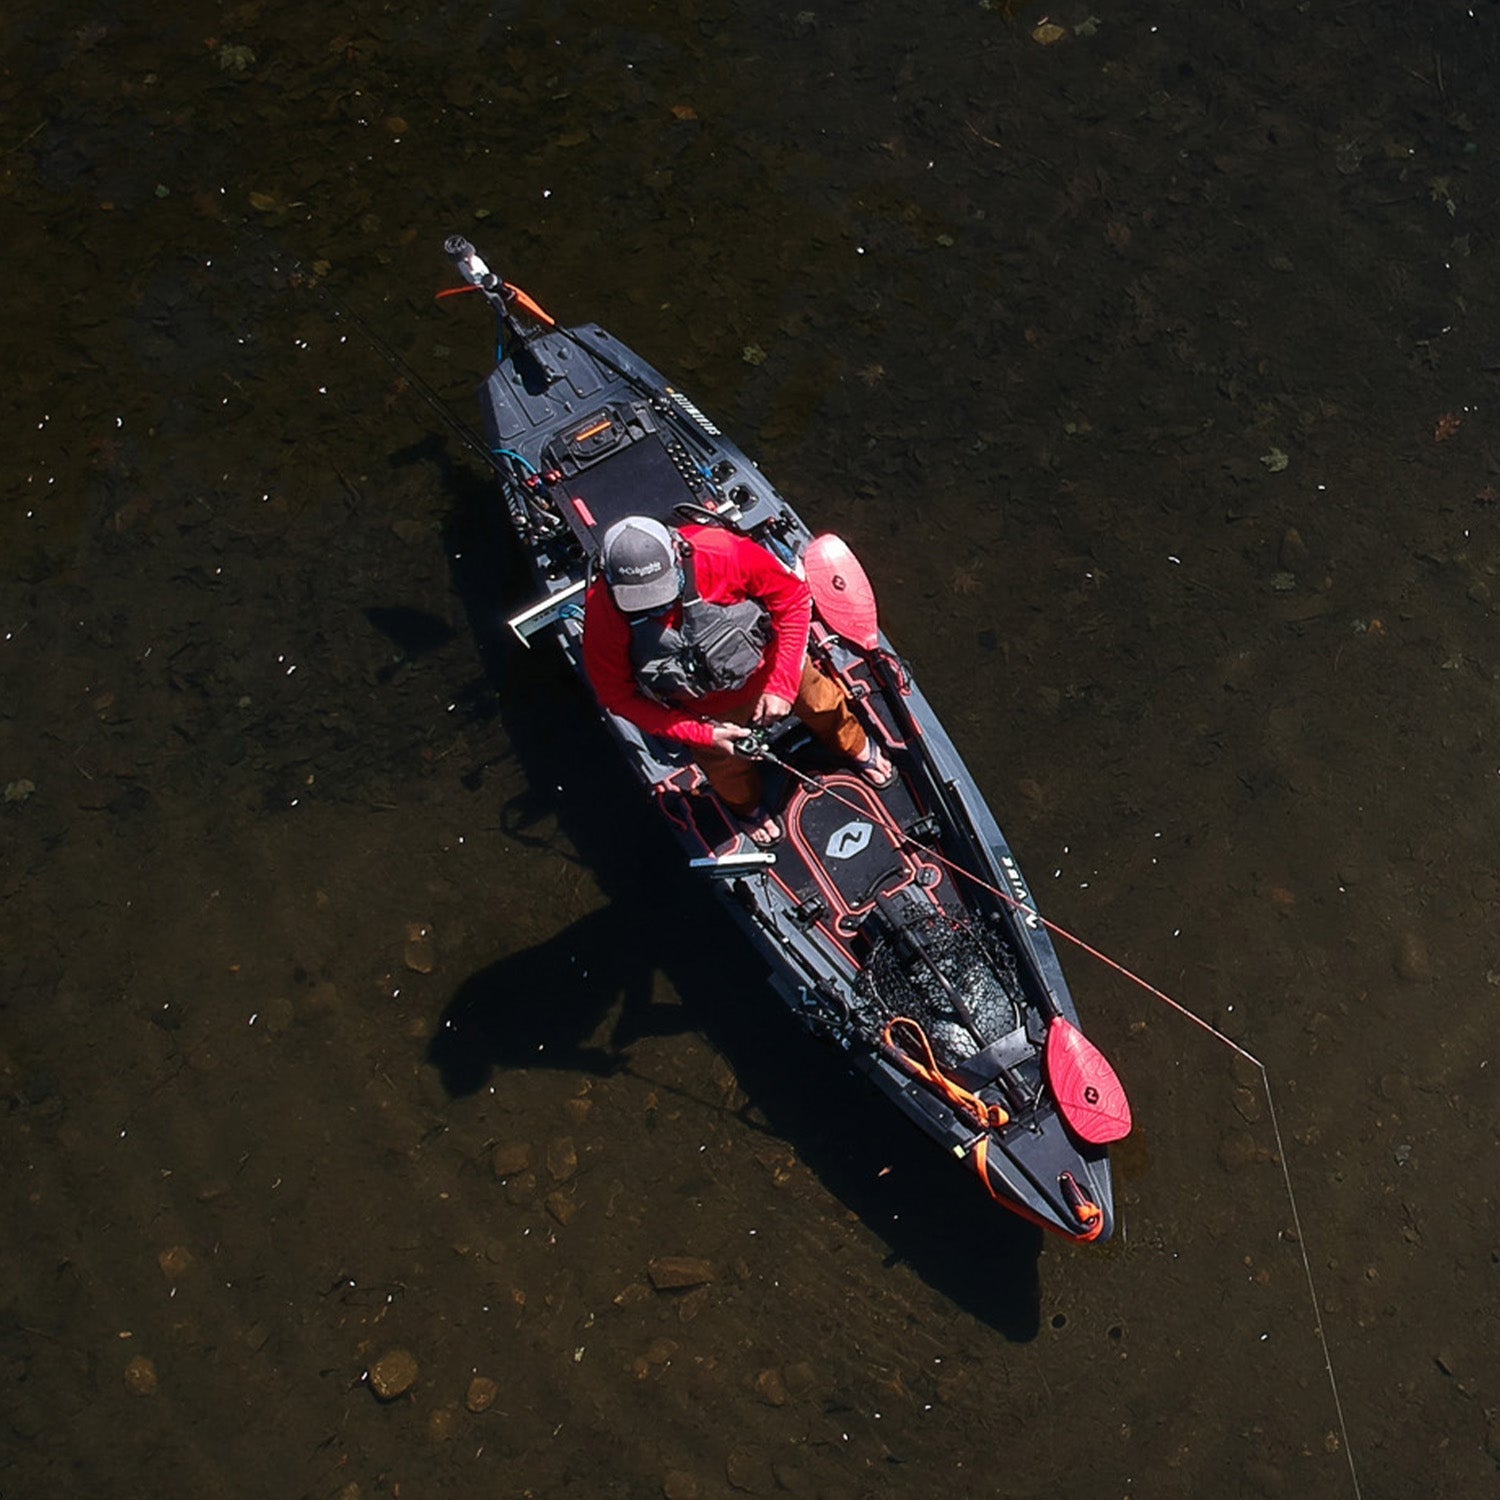 Kayak Fishing Rod Holder Kayak Deck Flush Mount Light Weight For